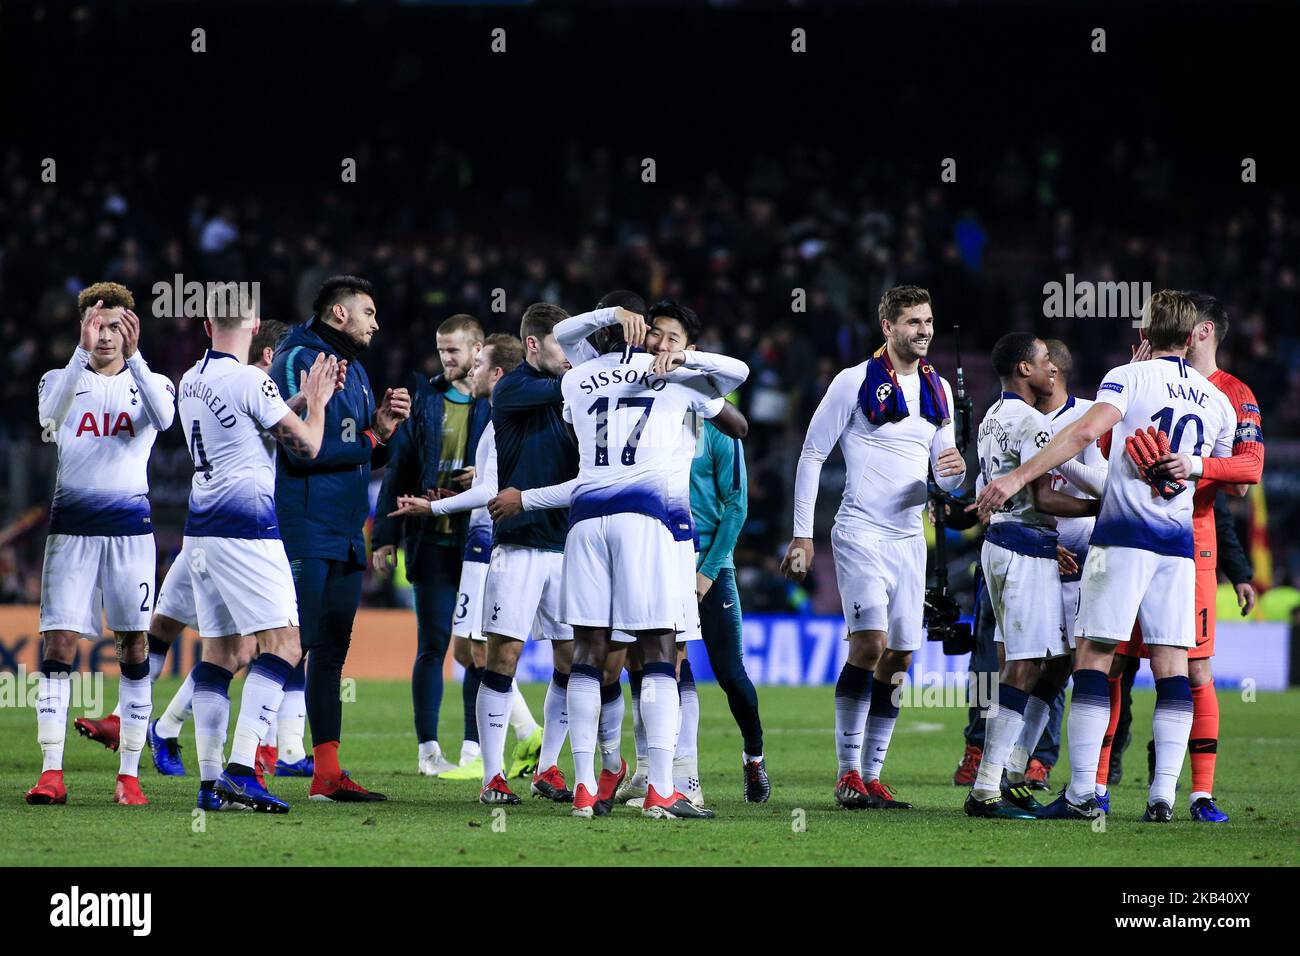 📸 Squad photoshoot 2020/21 - Tottenham Hotspur